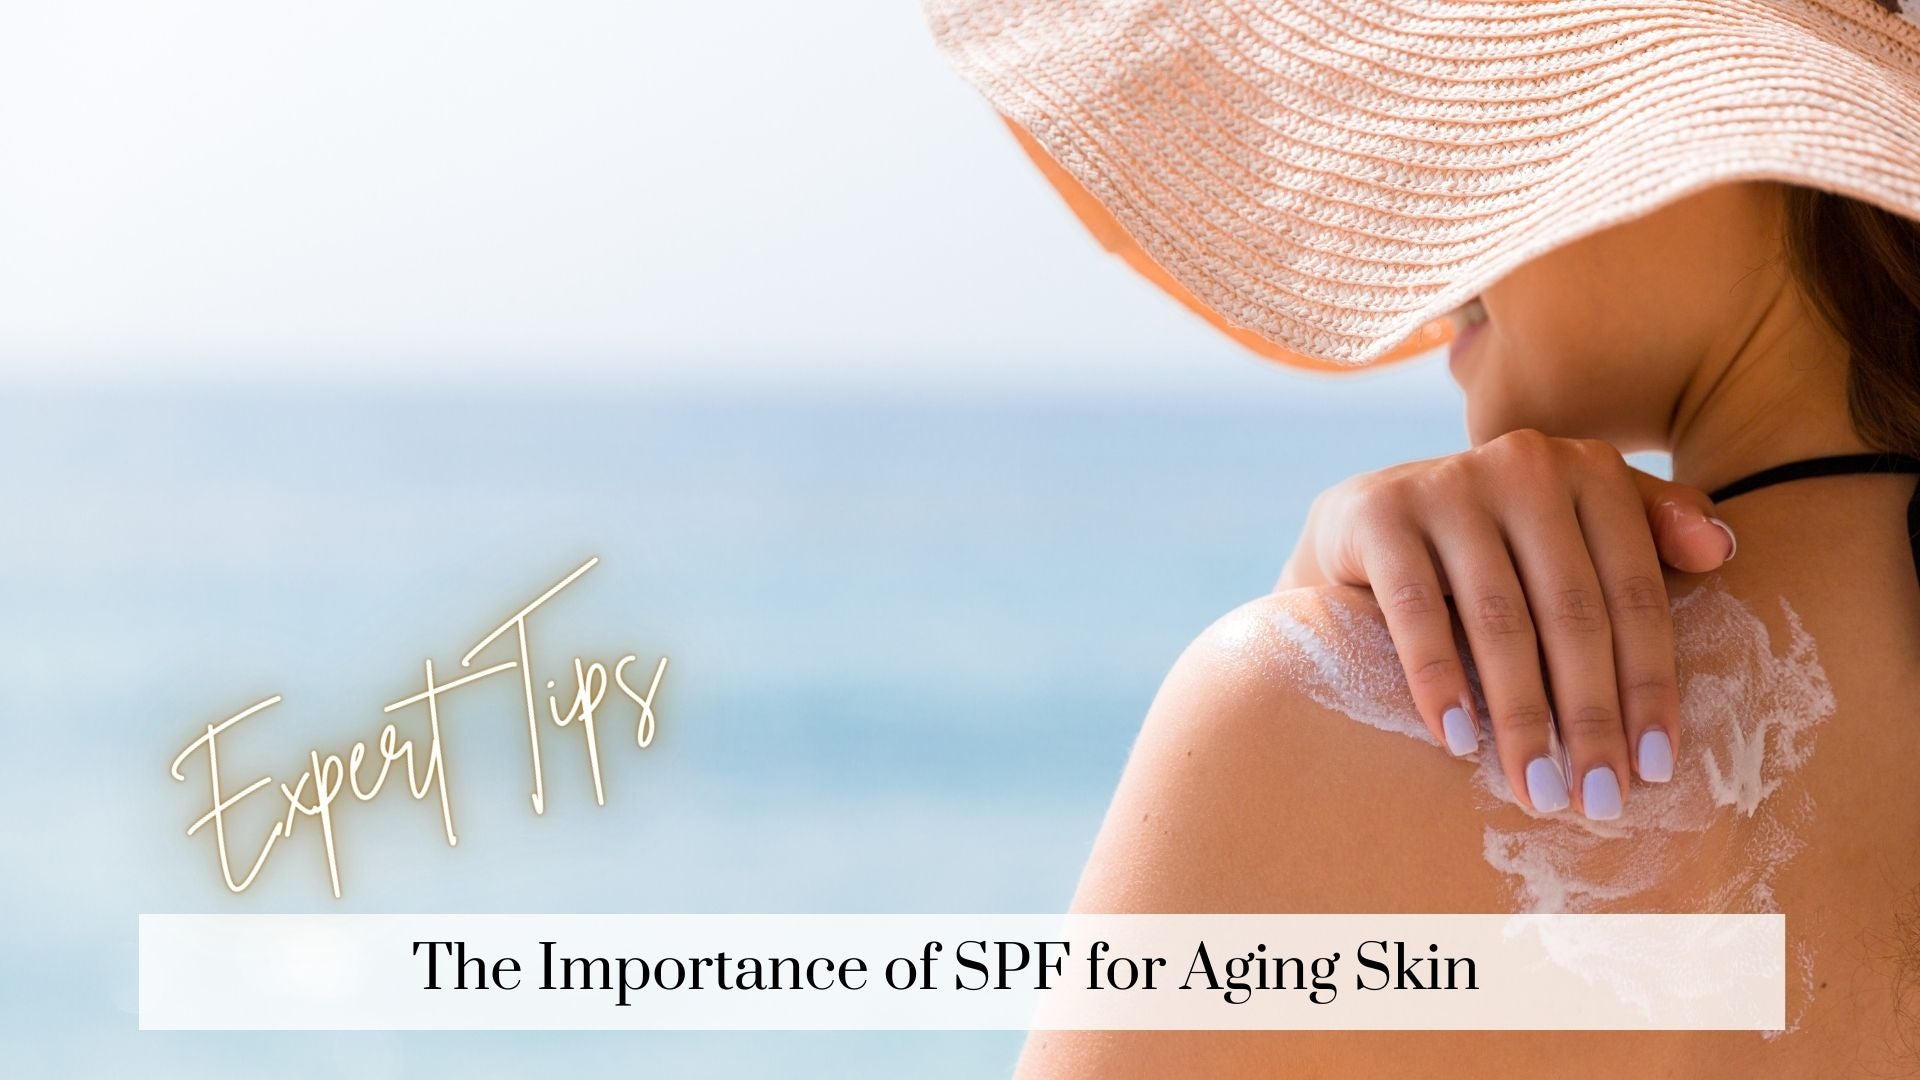  SPF for aging skin